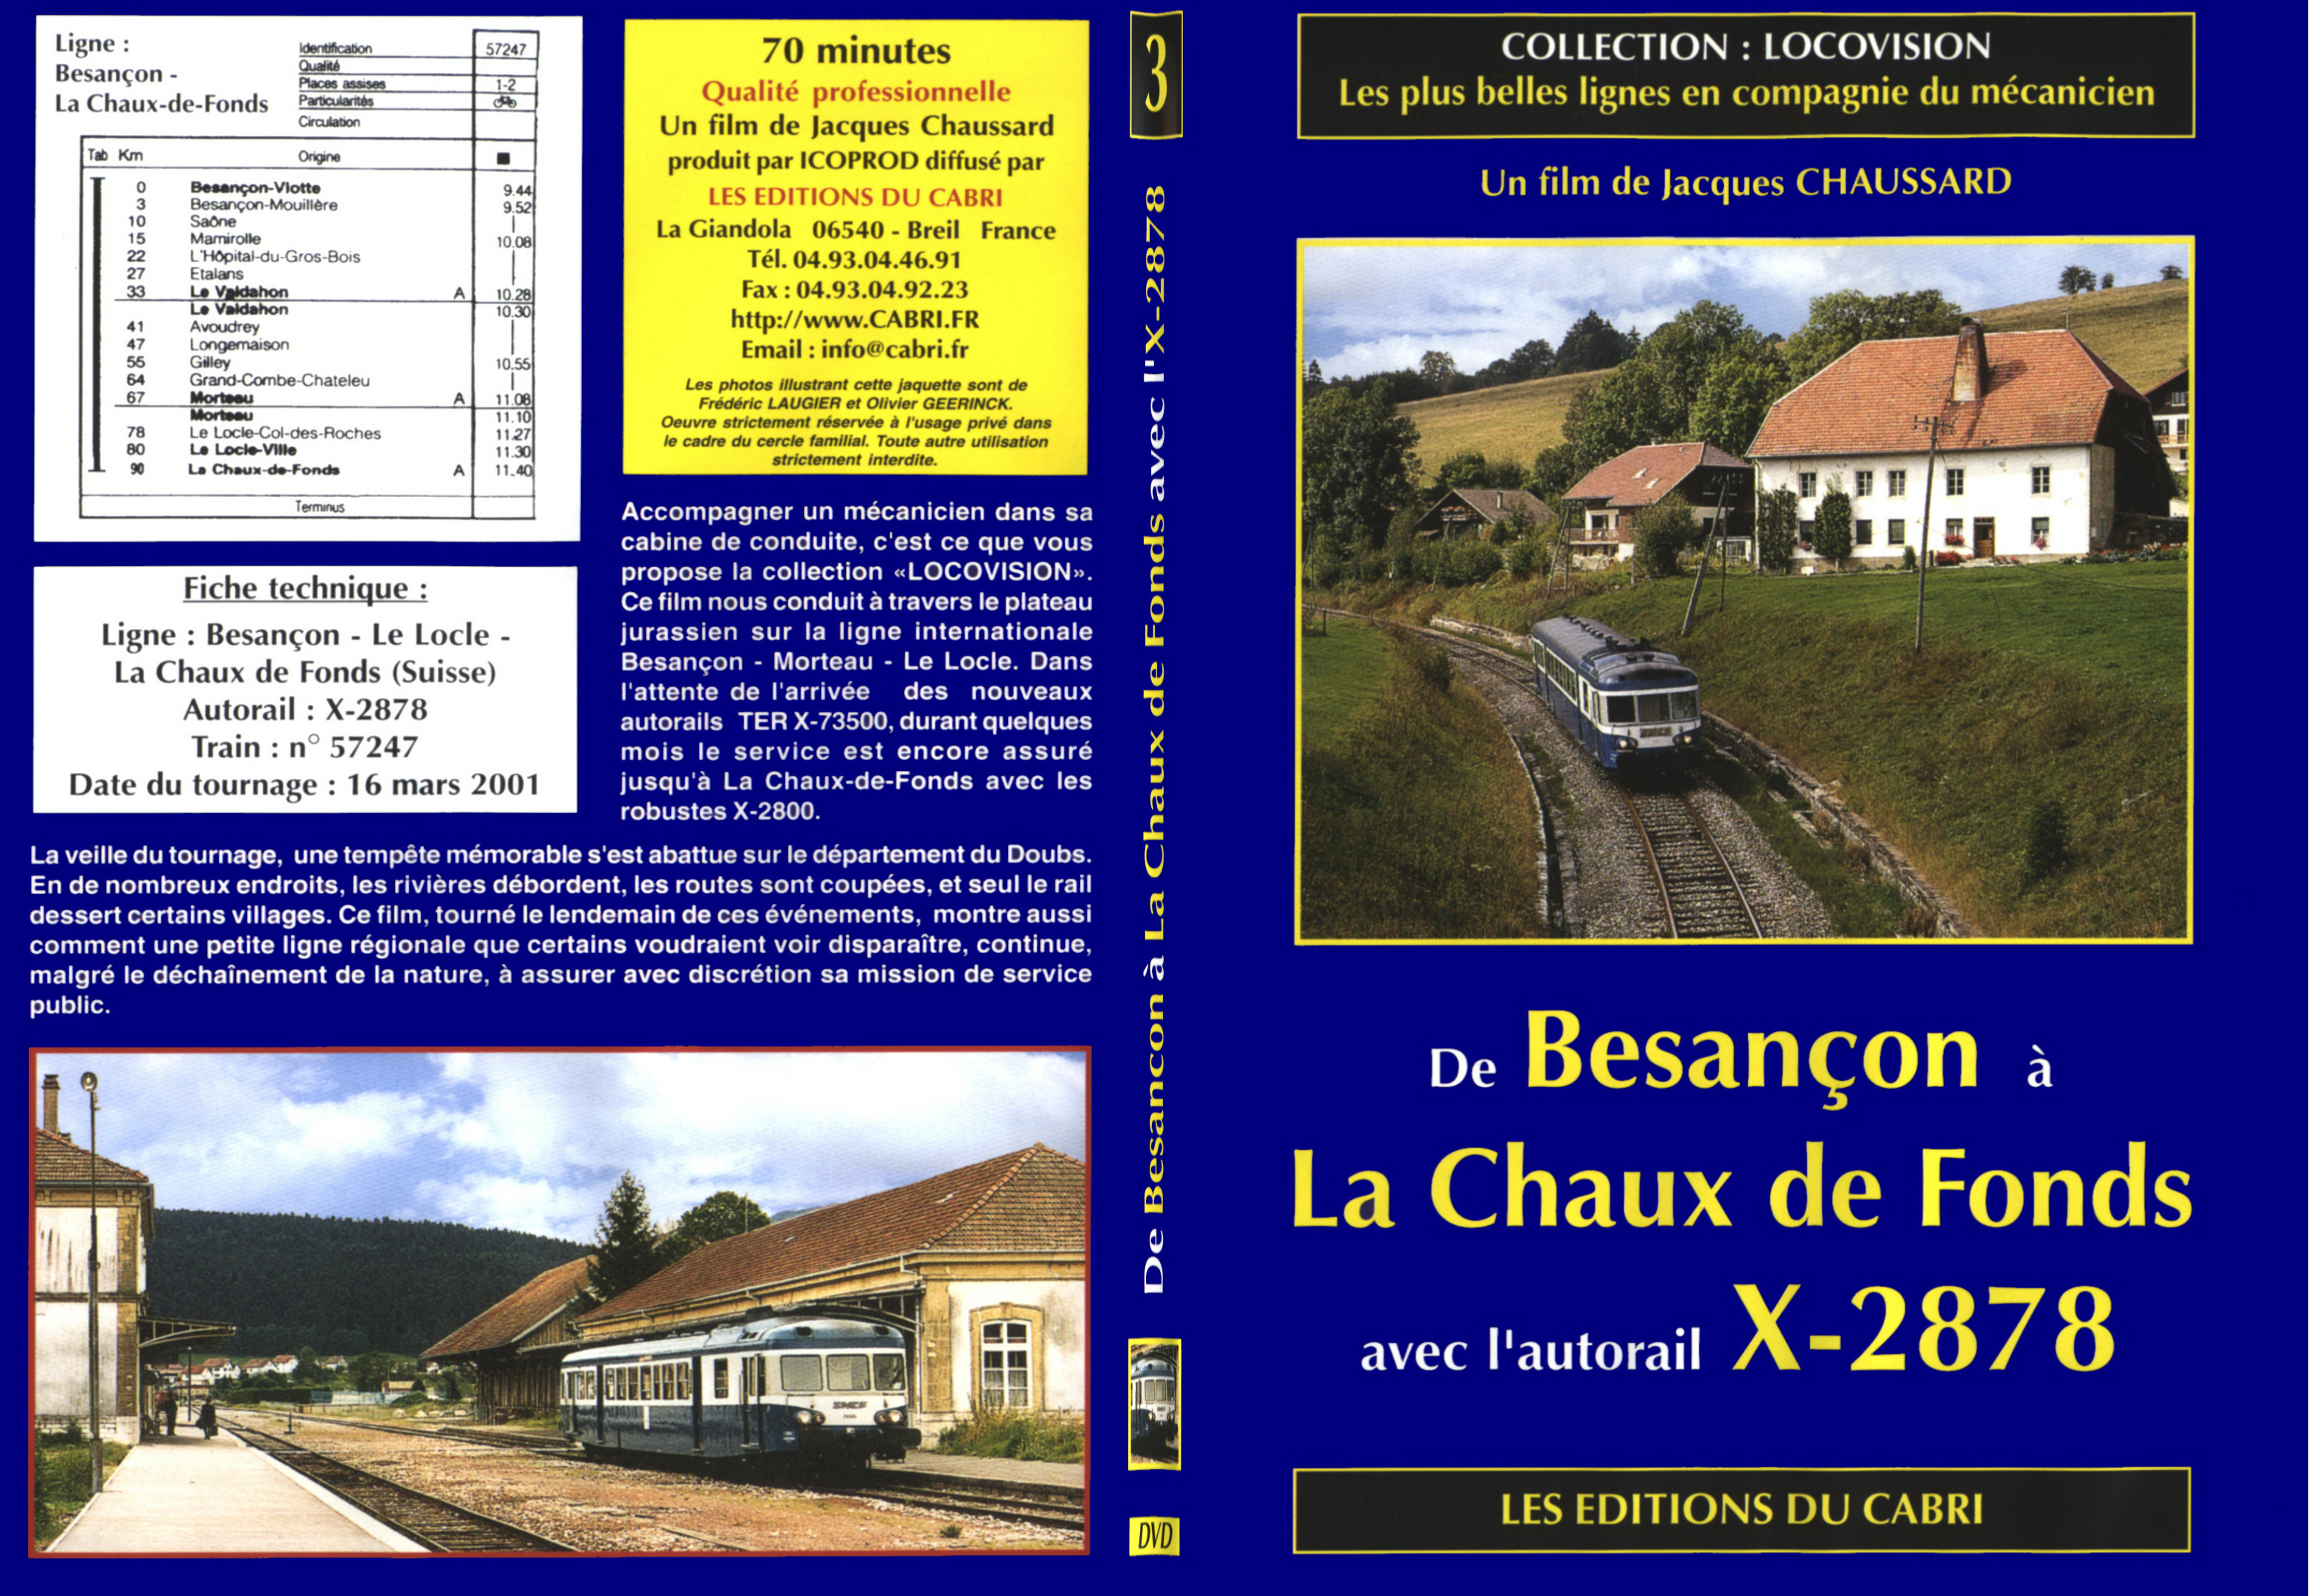 Jaquette DVD Besancon  la Chaux de Fonds avec un autorail X-2878 - SLIM